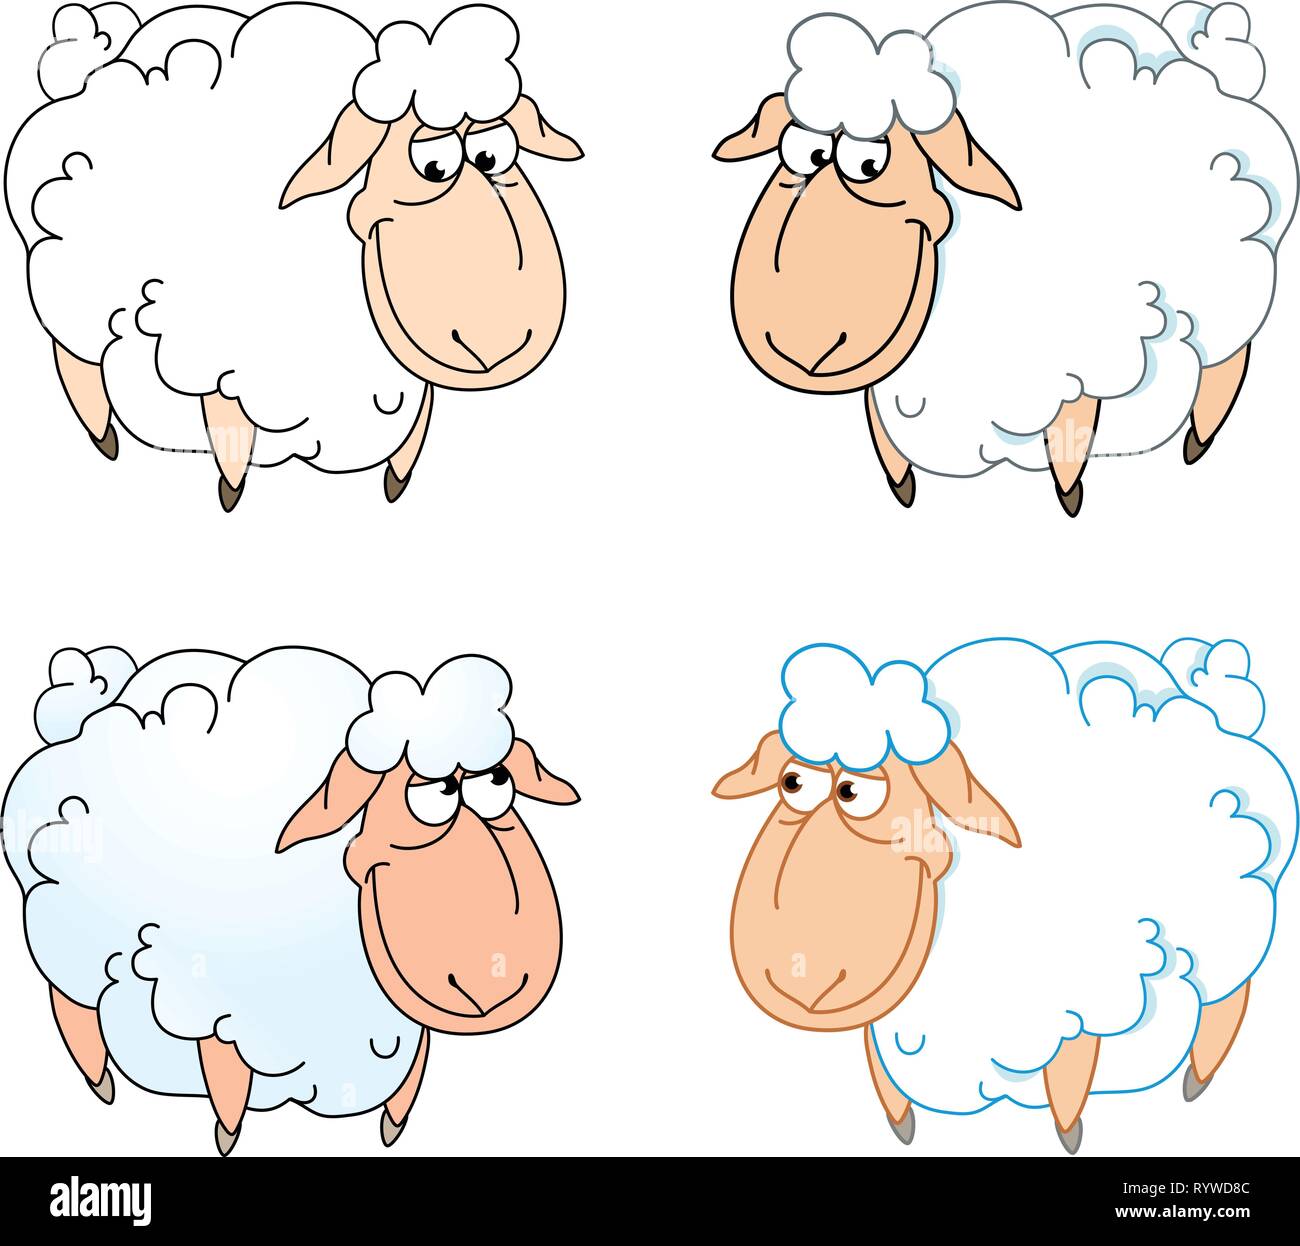 Die Abbildung zeigt ein paar lustige Cartoon Schafe auf einem weißen Hintergrund, auf separaten Ebenen. Stock Vektor